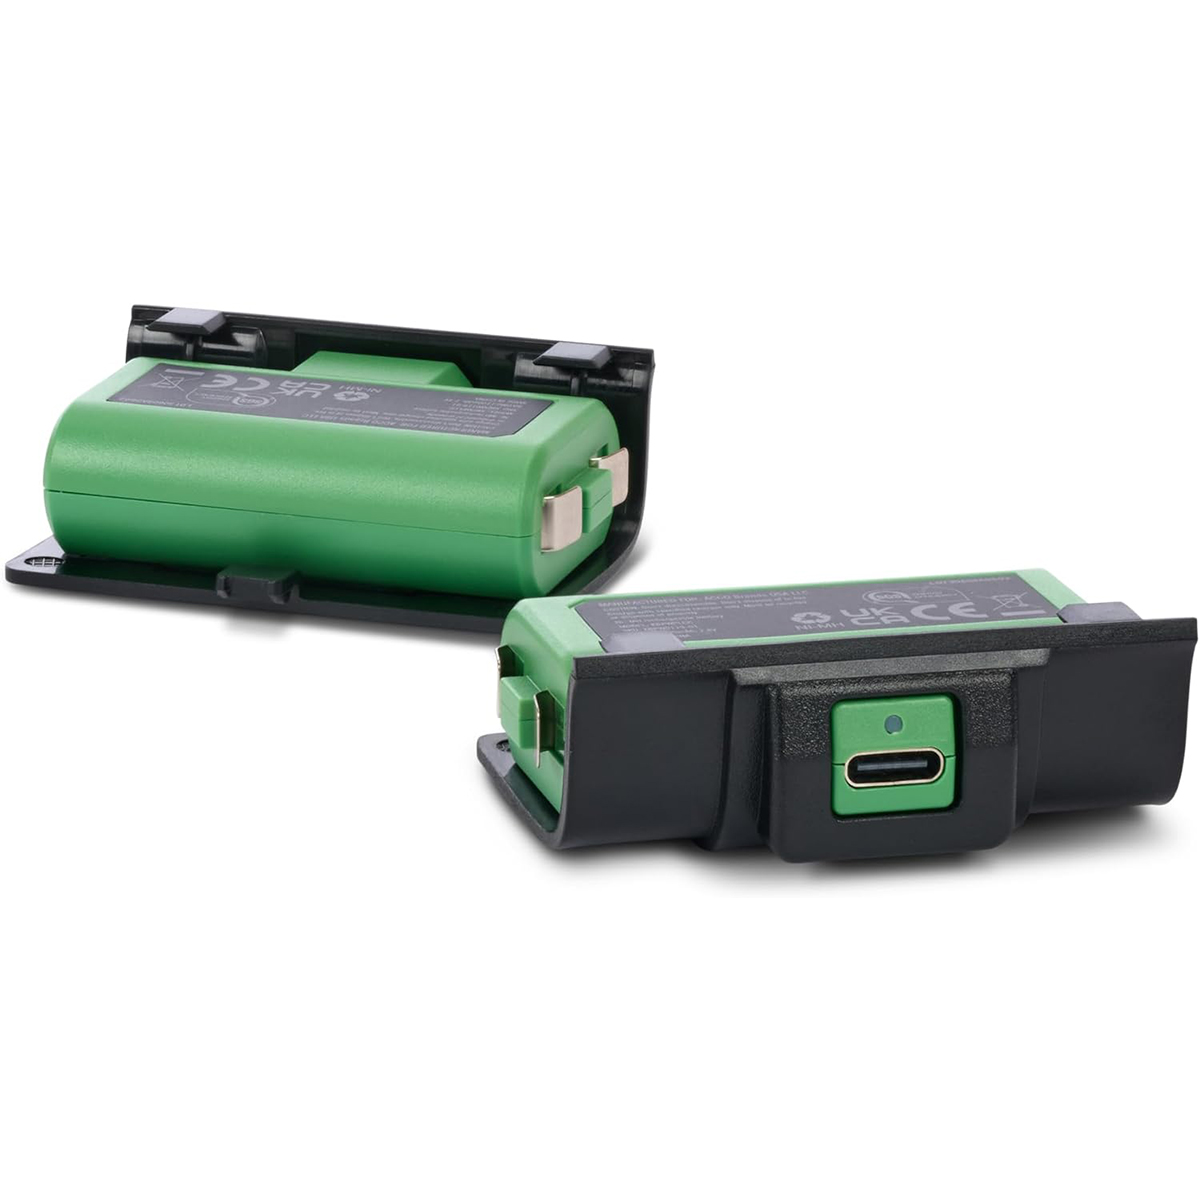 نکته خرید - قیمت روز باتری قابل شارژ دسته بازی xbox s/x/one پاور ای مدل power A Charge Kit مجموعه 2 عددی خرید